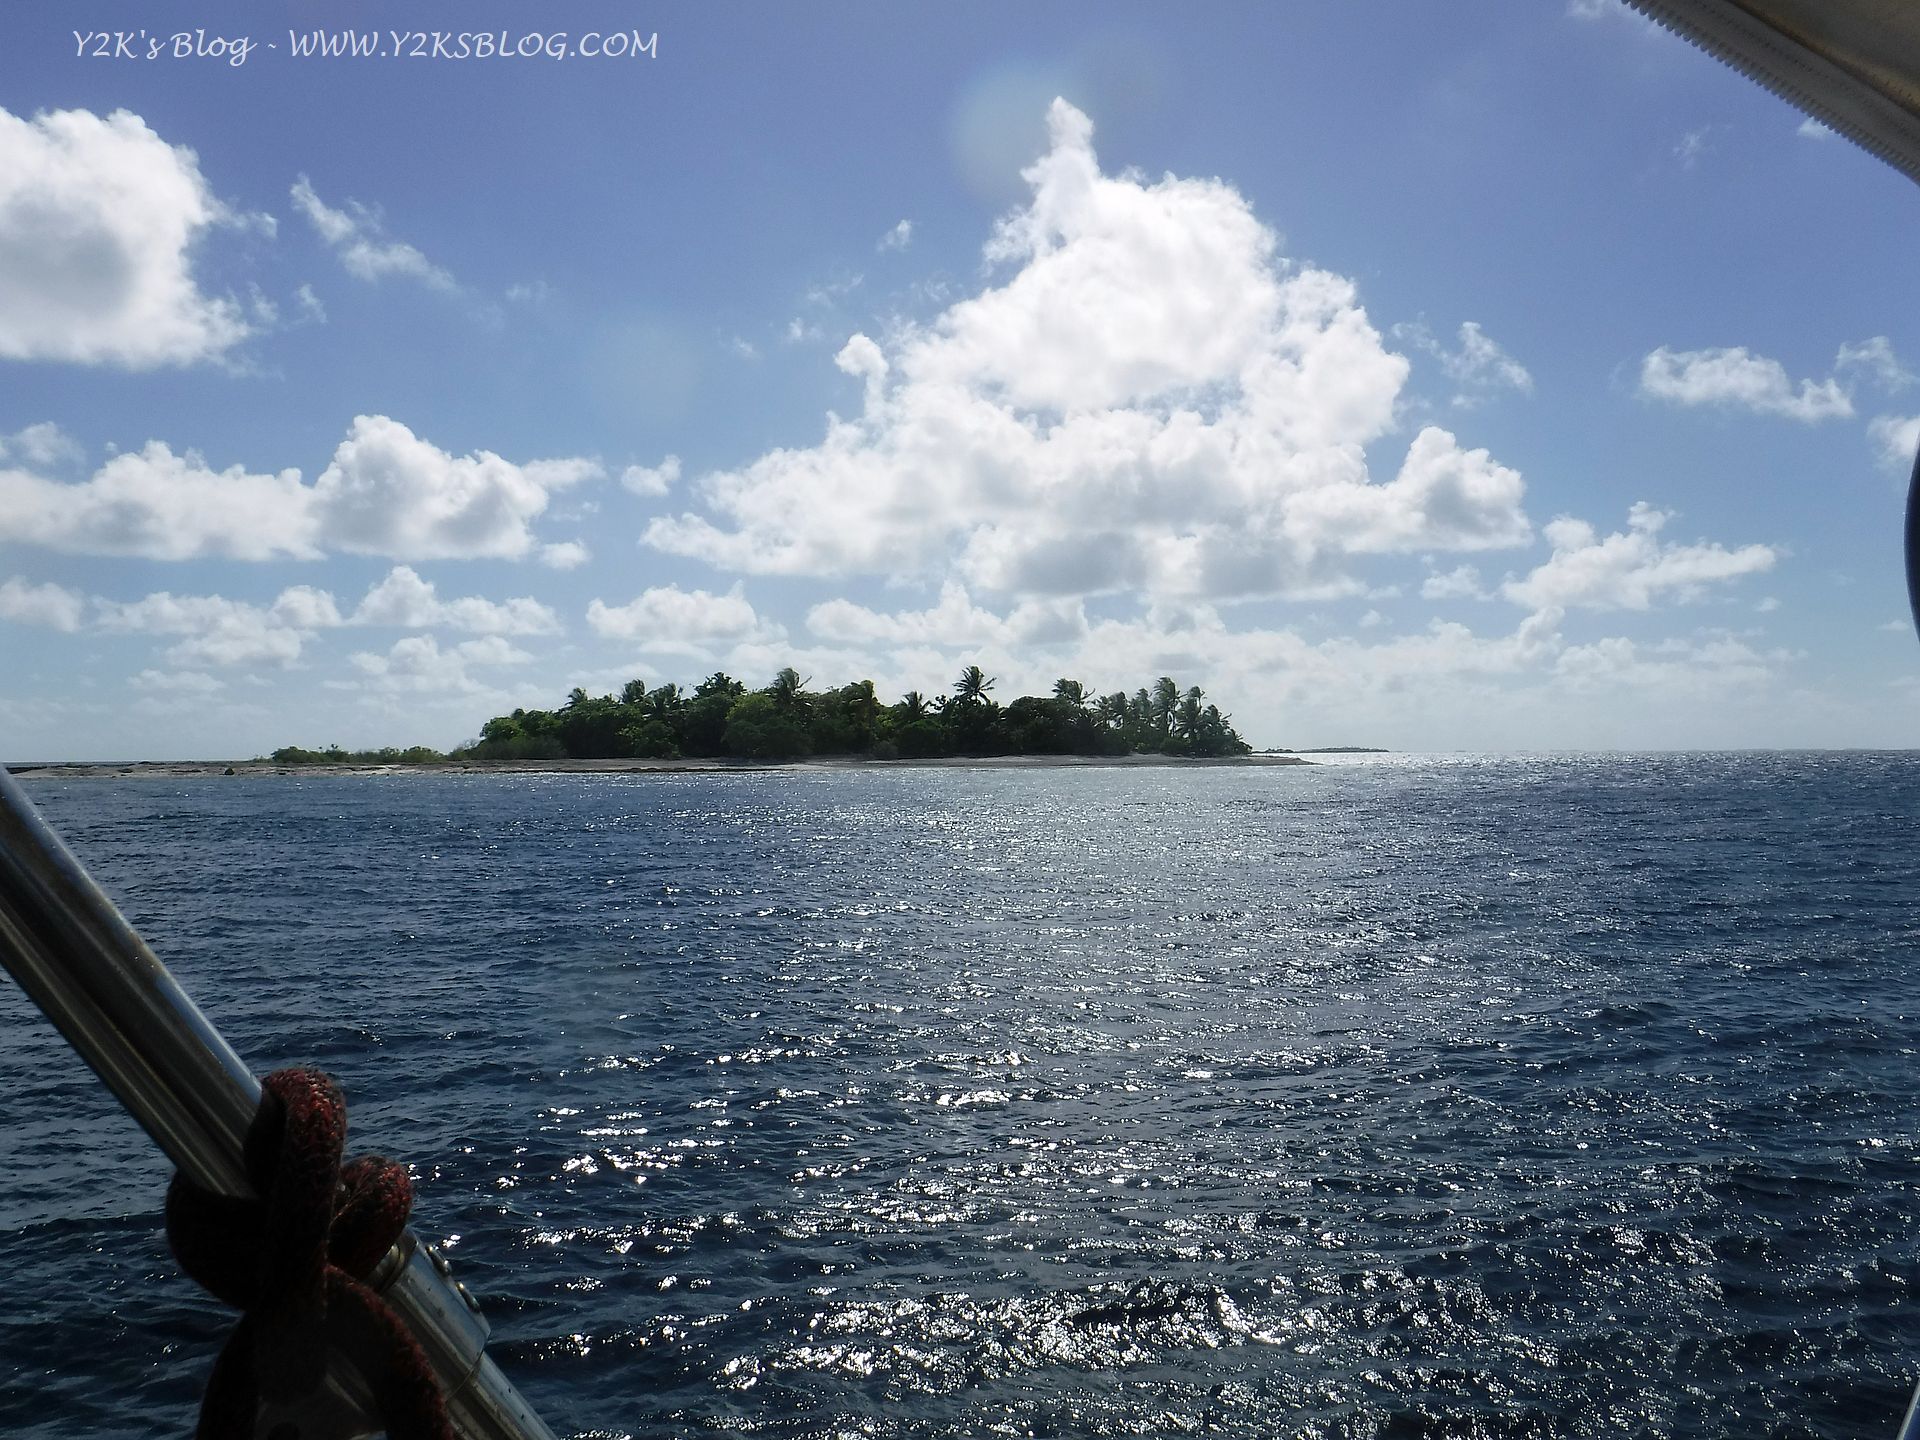 Il primo atollo delle Tuamotu - Raroia